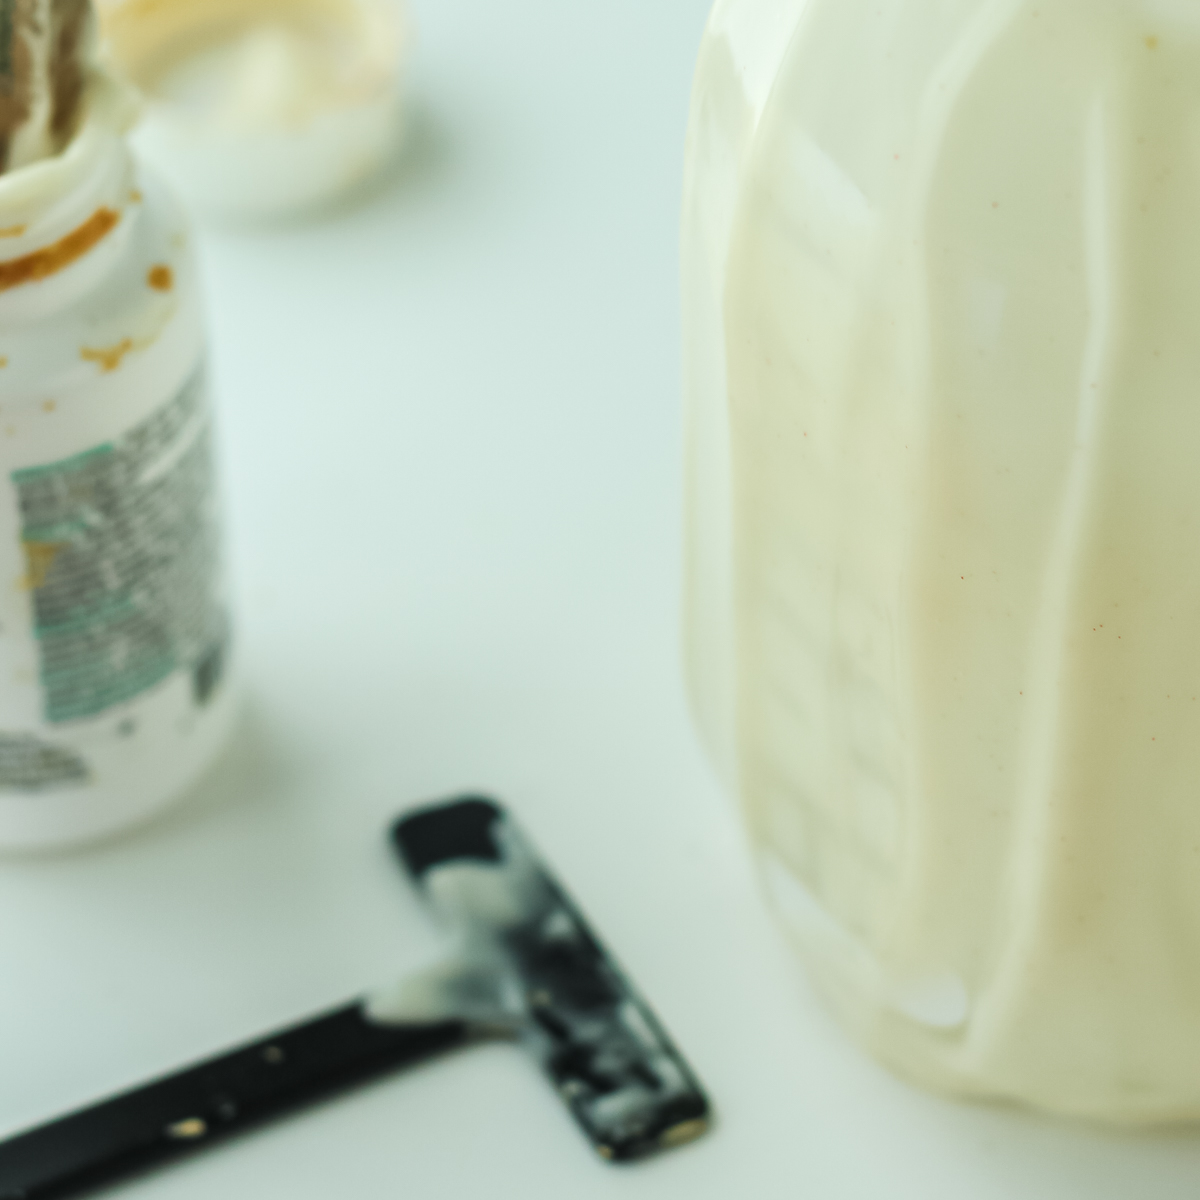 etching a mason jar with cream